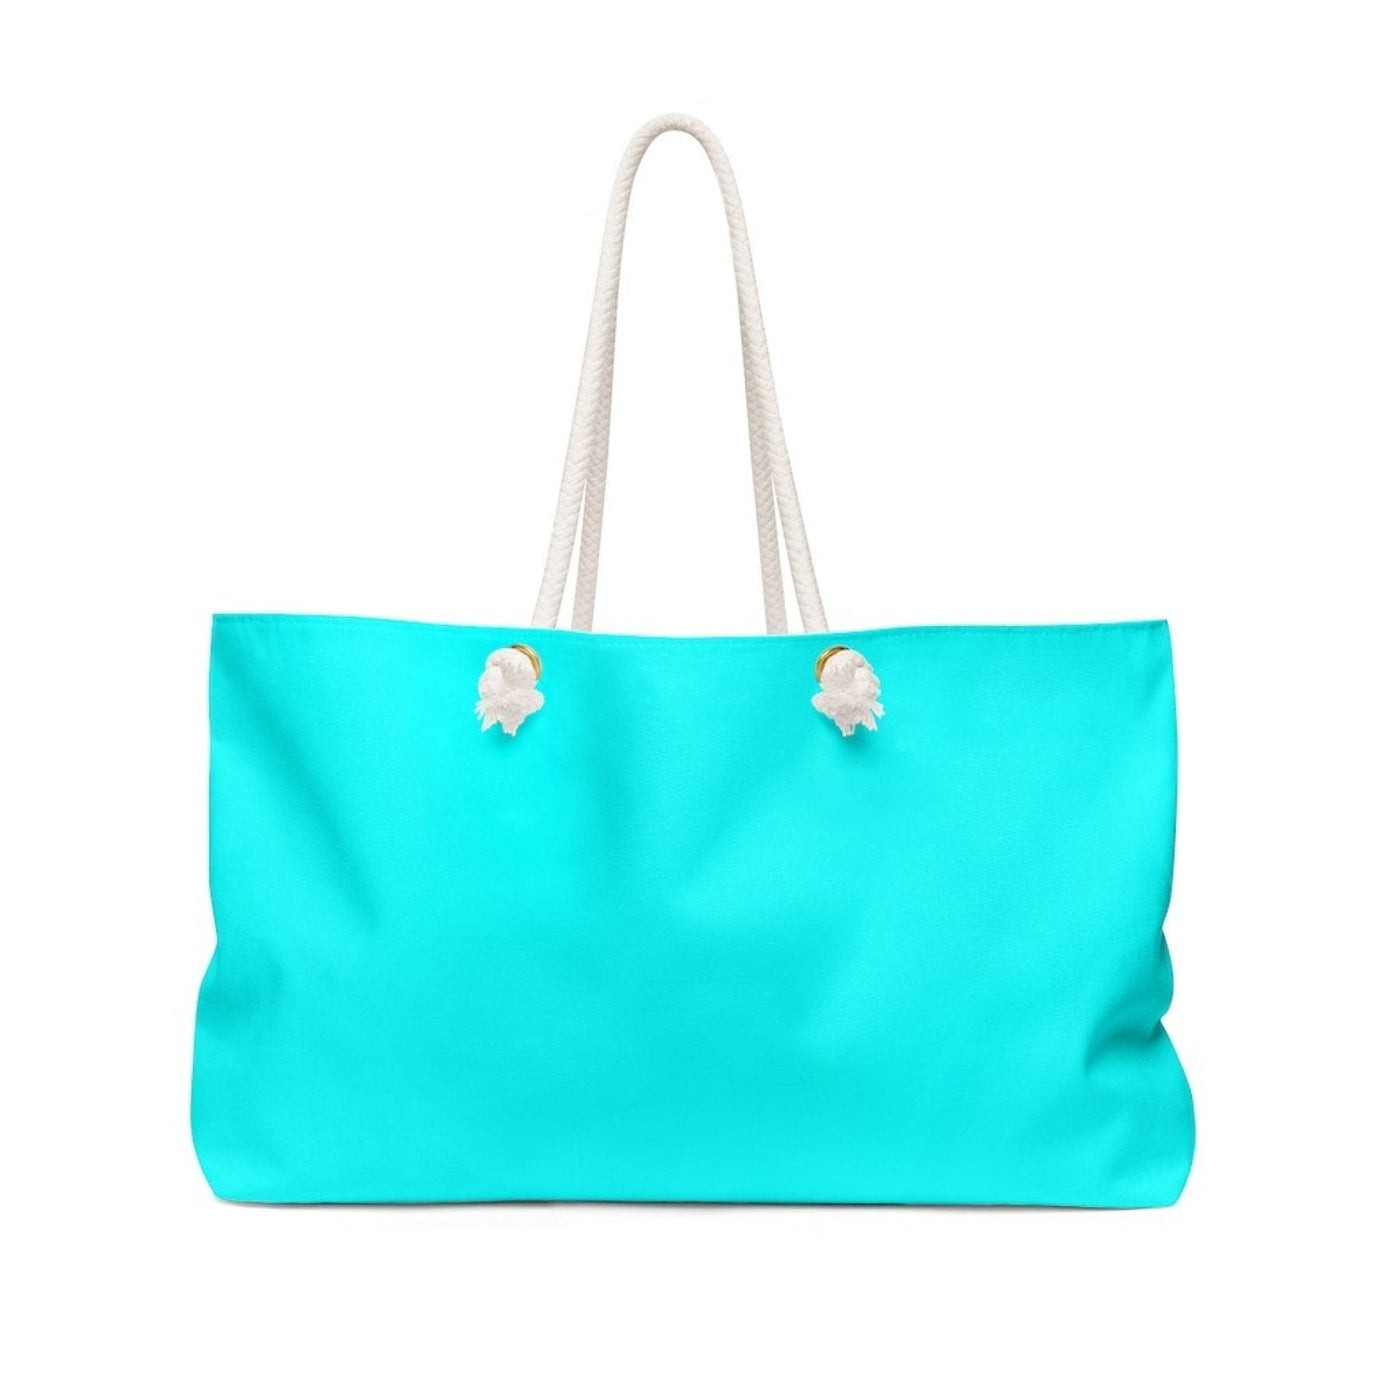 Weekender Tote Bag Cyan Blue - Bags | Tote Bags | Weekender